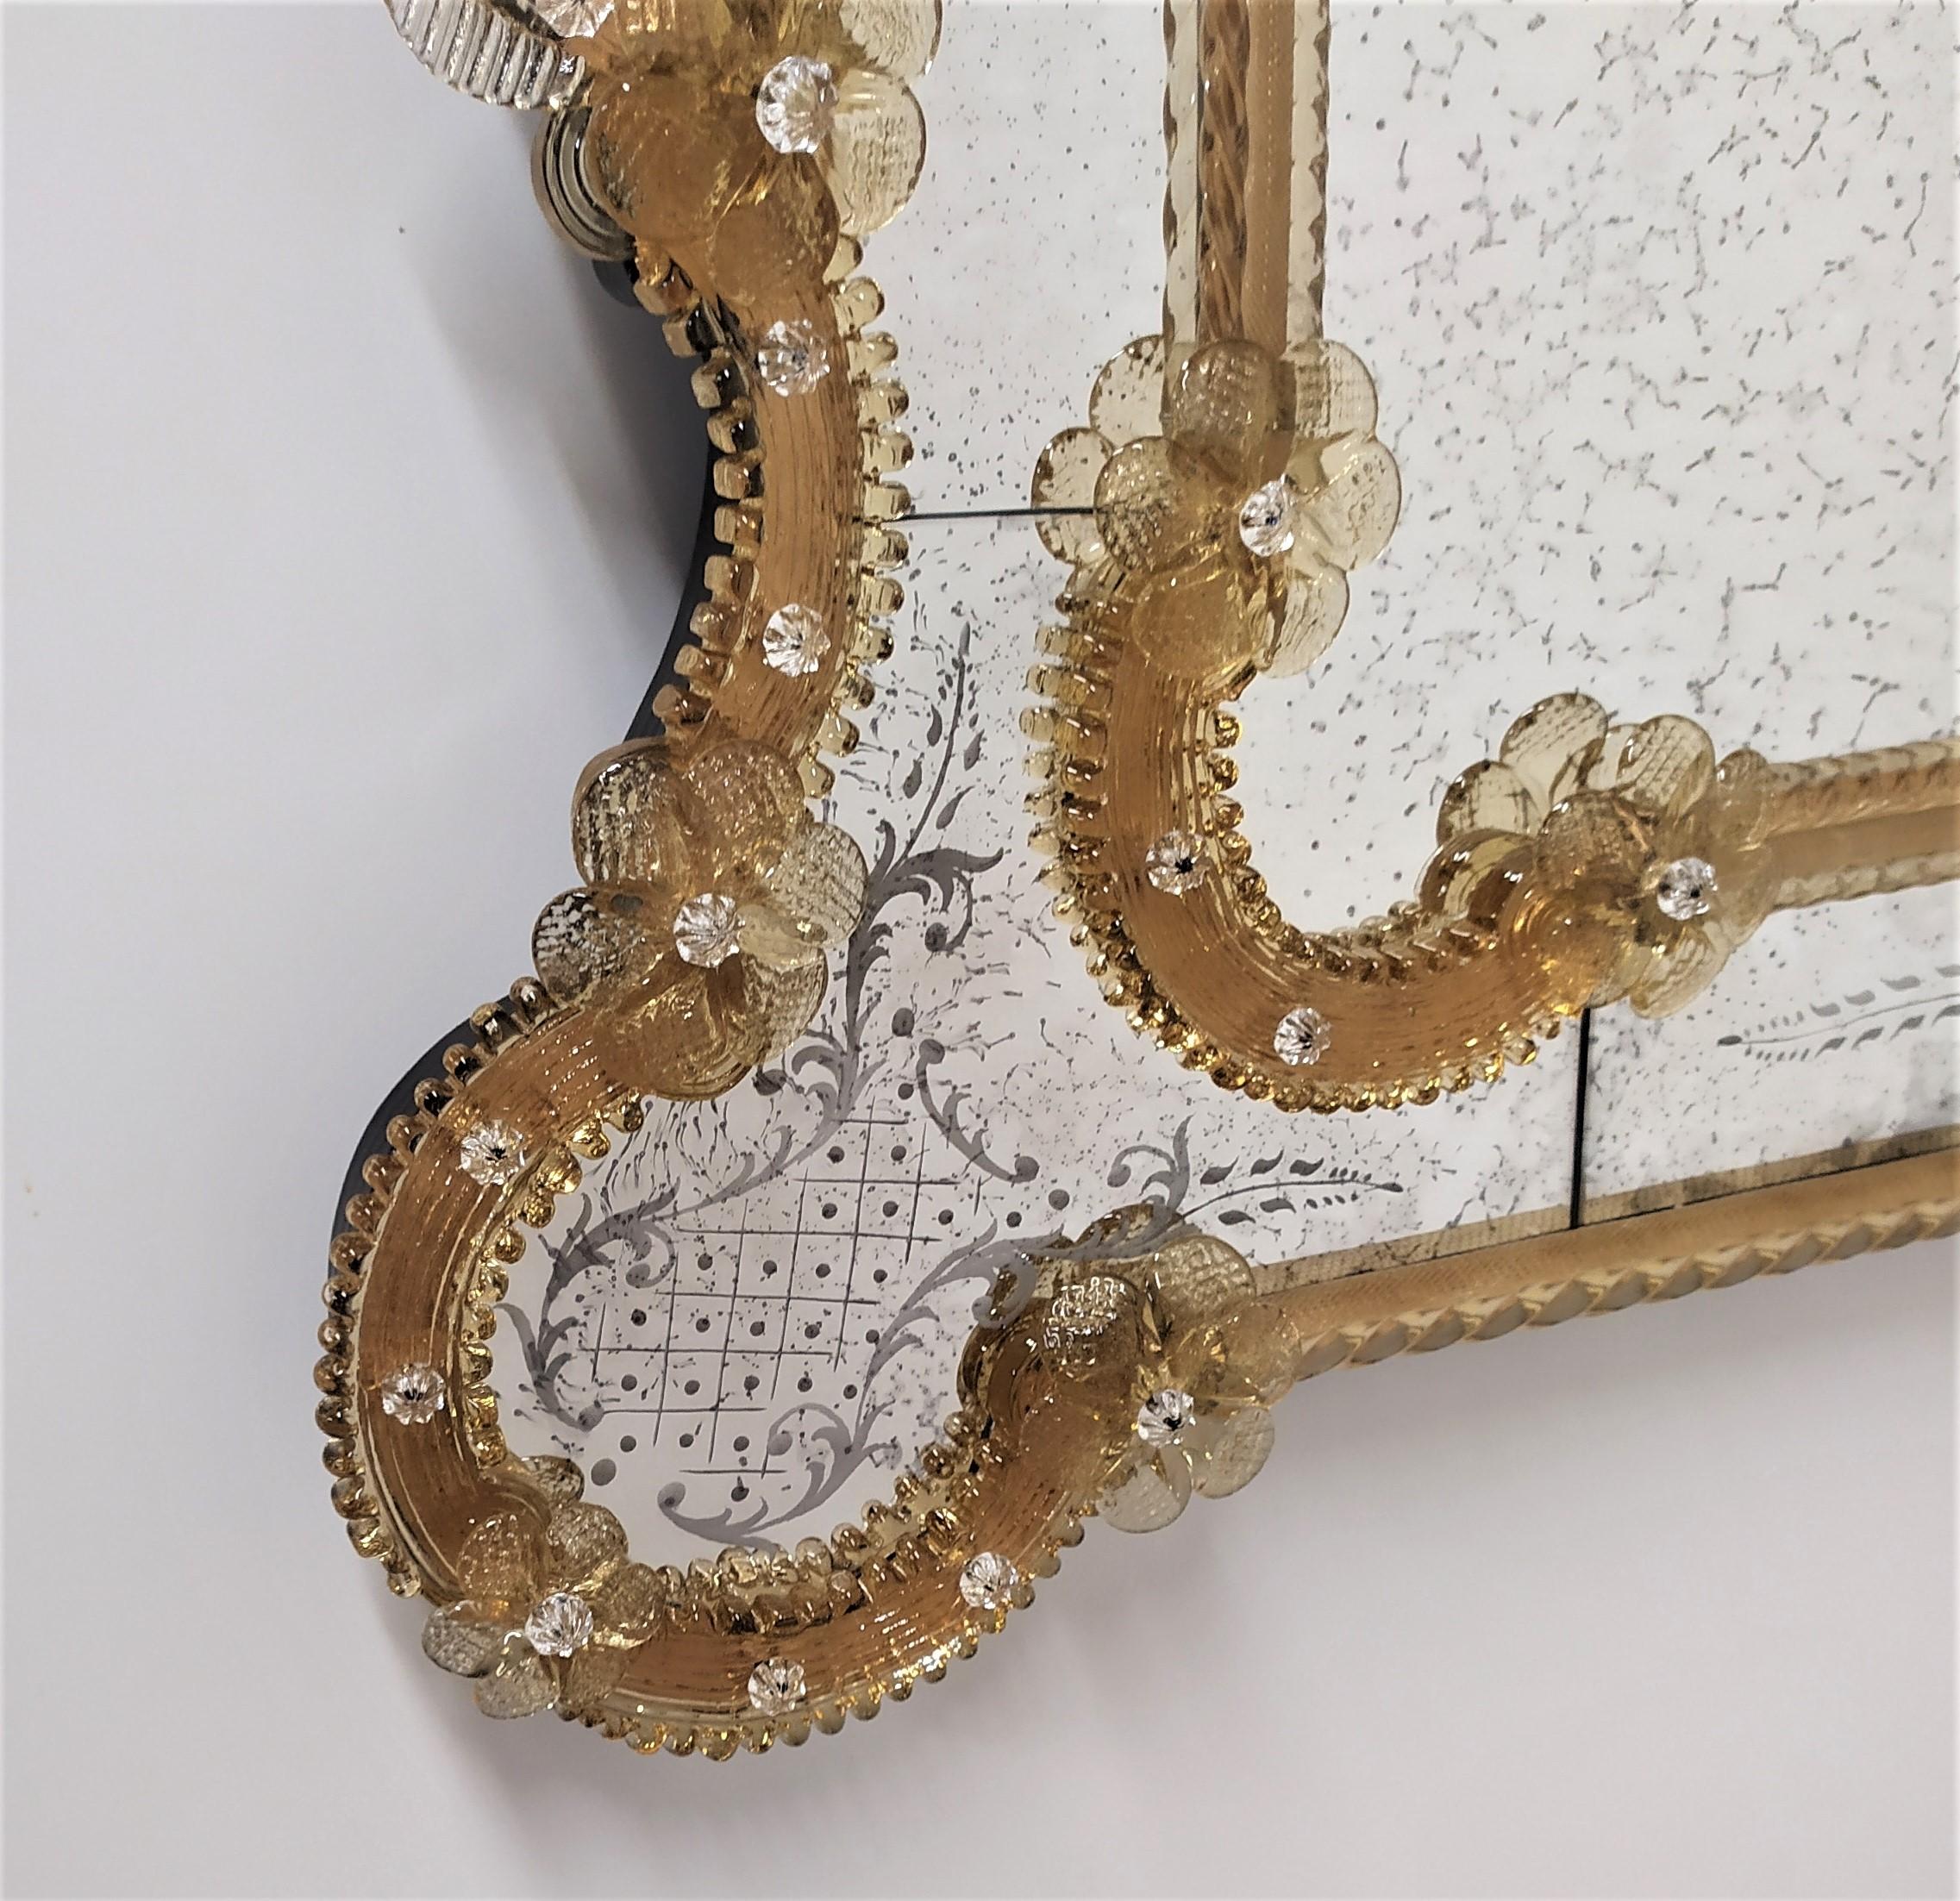 Spiegel im venezianischen Stil von der Fratelli Tosi auf ein Design von der Fratelli Barbini Glasspiegel, in Murano-Glas, vollständig handgefertigt nach den Techniken der Glasmeister des vierzehnten Jahrhunderts, mit dekoriert
Blumen- und